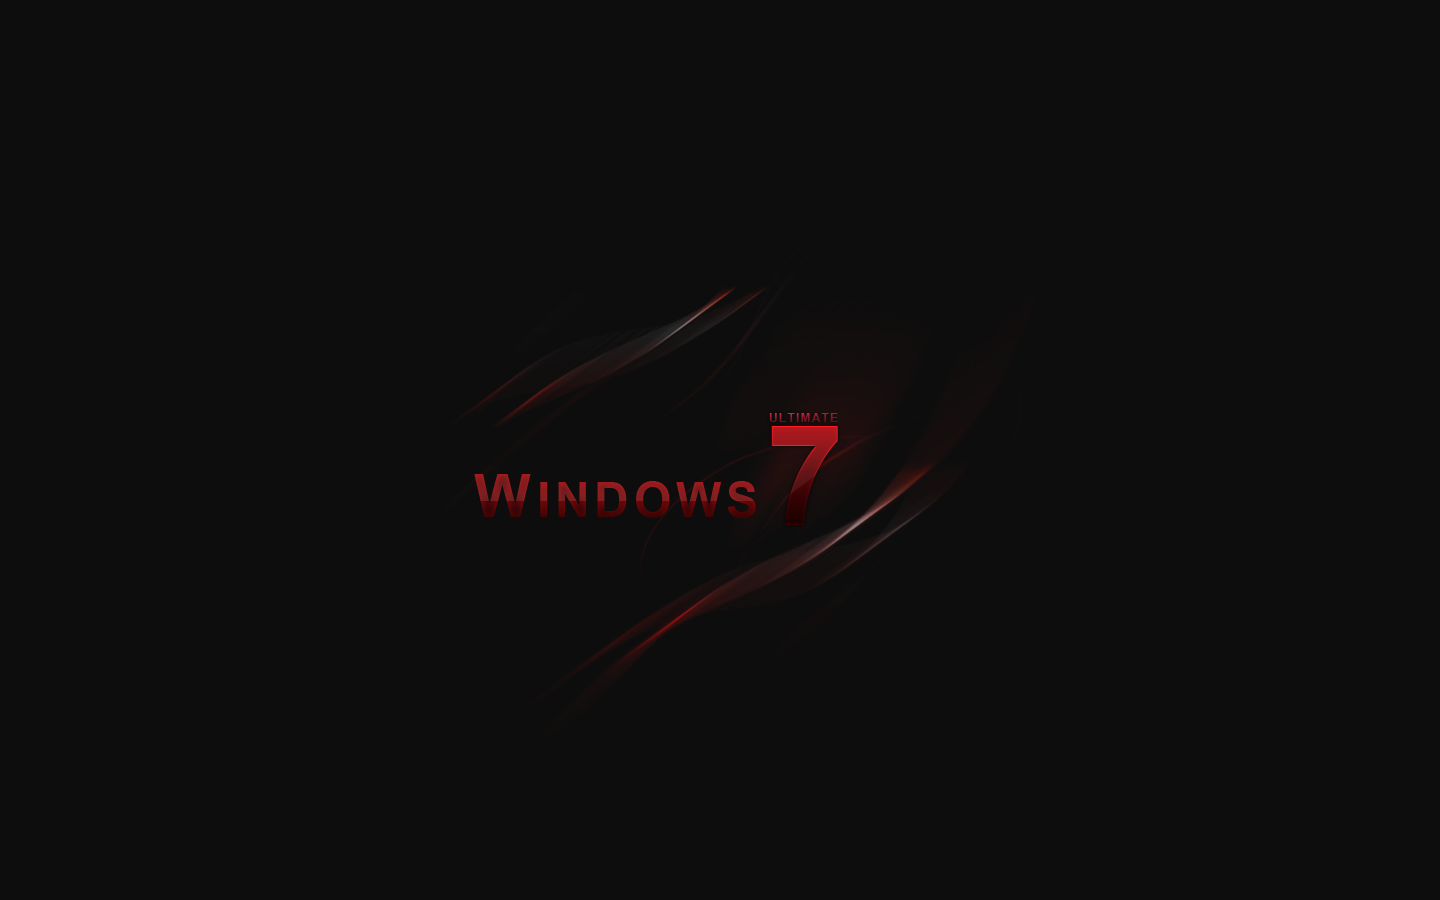 Hình nền Windows 7 đen đỏ: Màu sắc đen đỏ gợi lên vẻ đẹp đầy cảm hứng và sự nghiệp hiệu quả. Đừng bỏ qua hình nền Windows 7 đen đỏ để thể hiện tính cách quyết đoán của bạn.